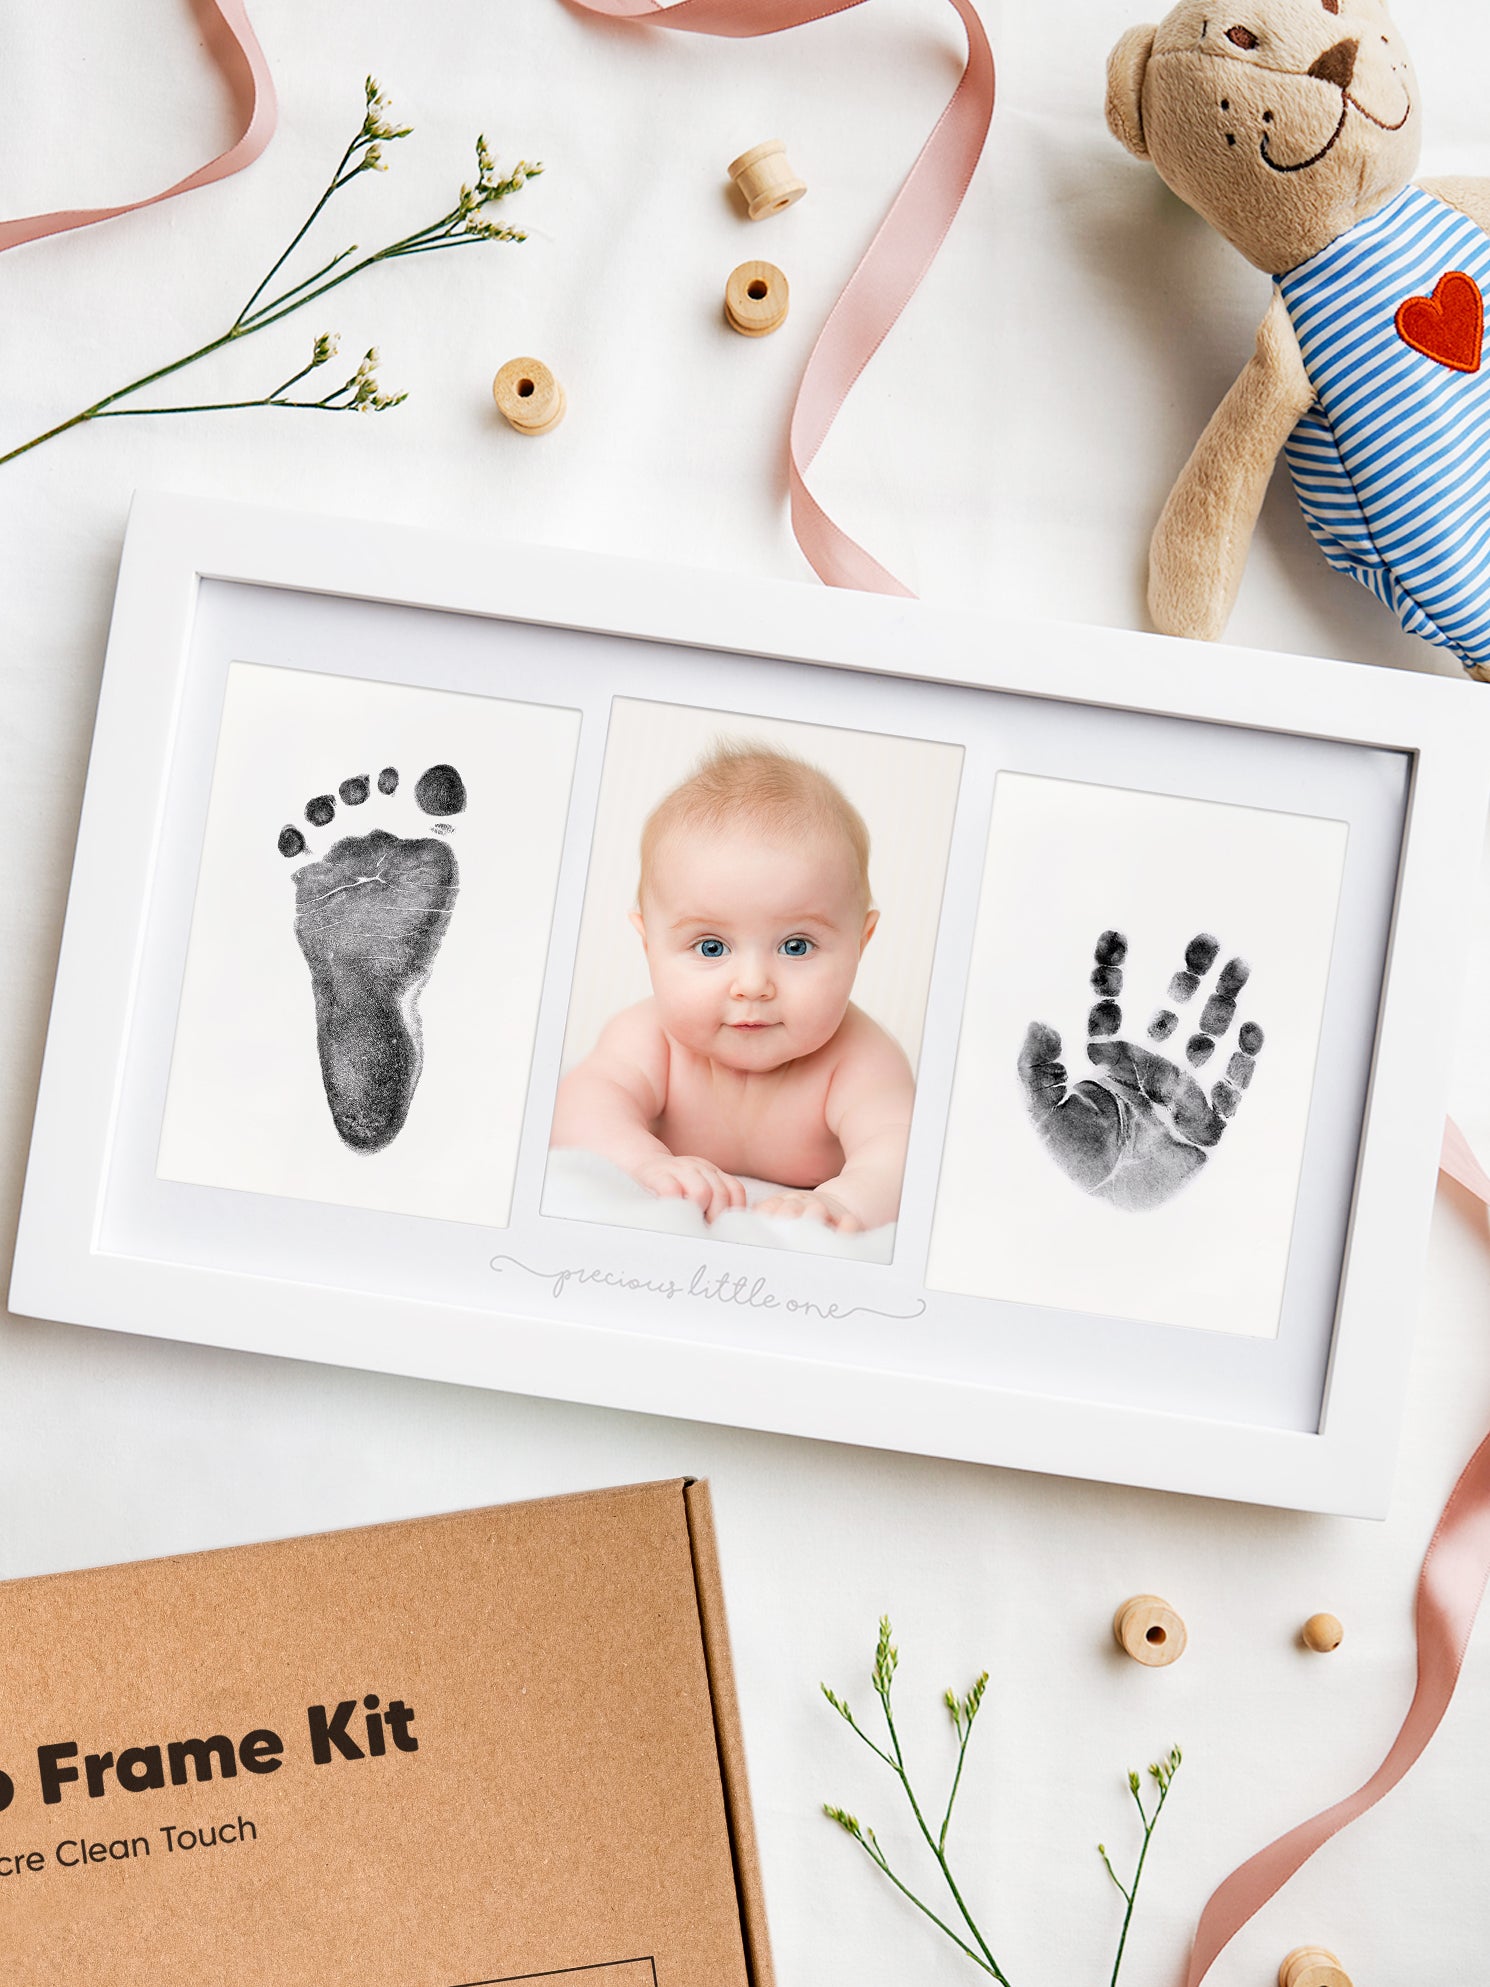 Baby Handprint Kit, Inkless Hand and Footprint Keepsake Kit in